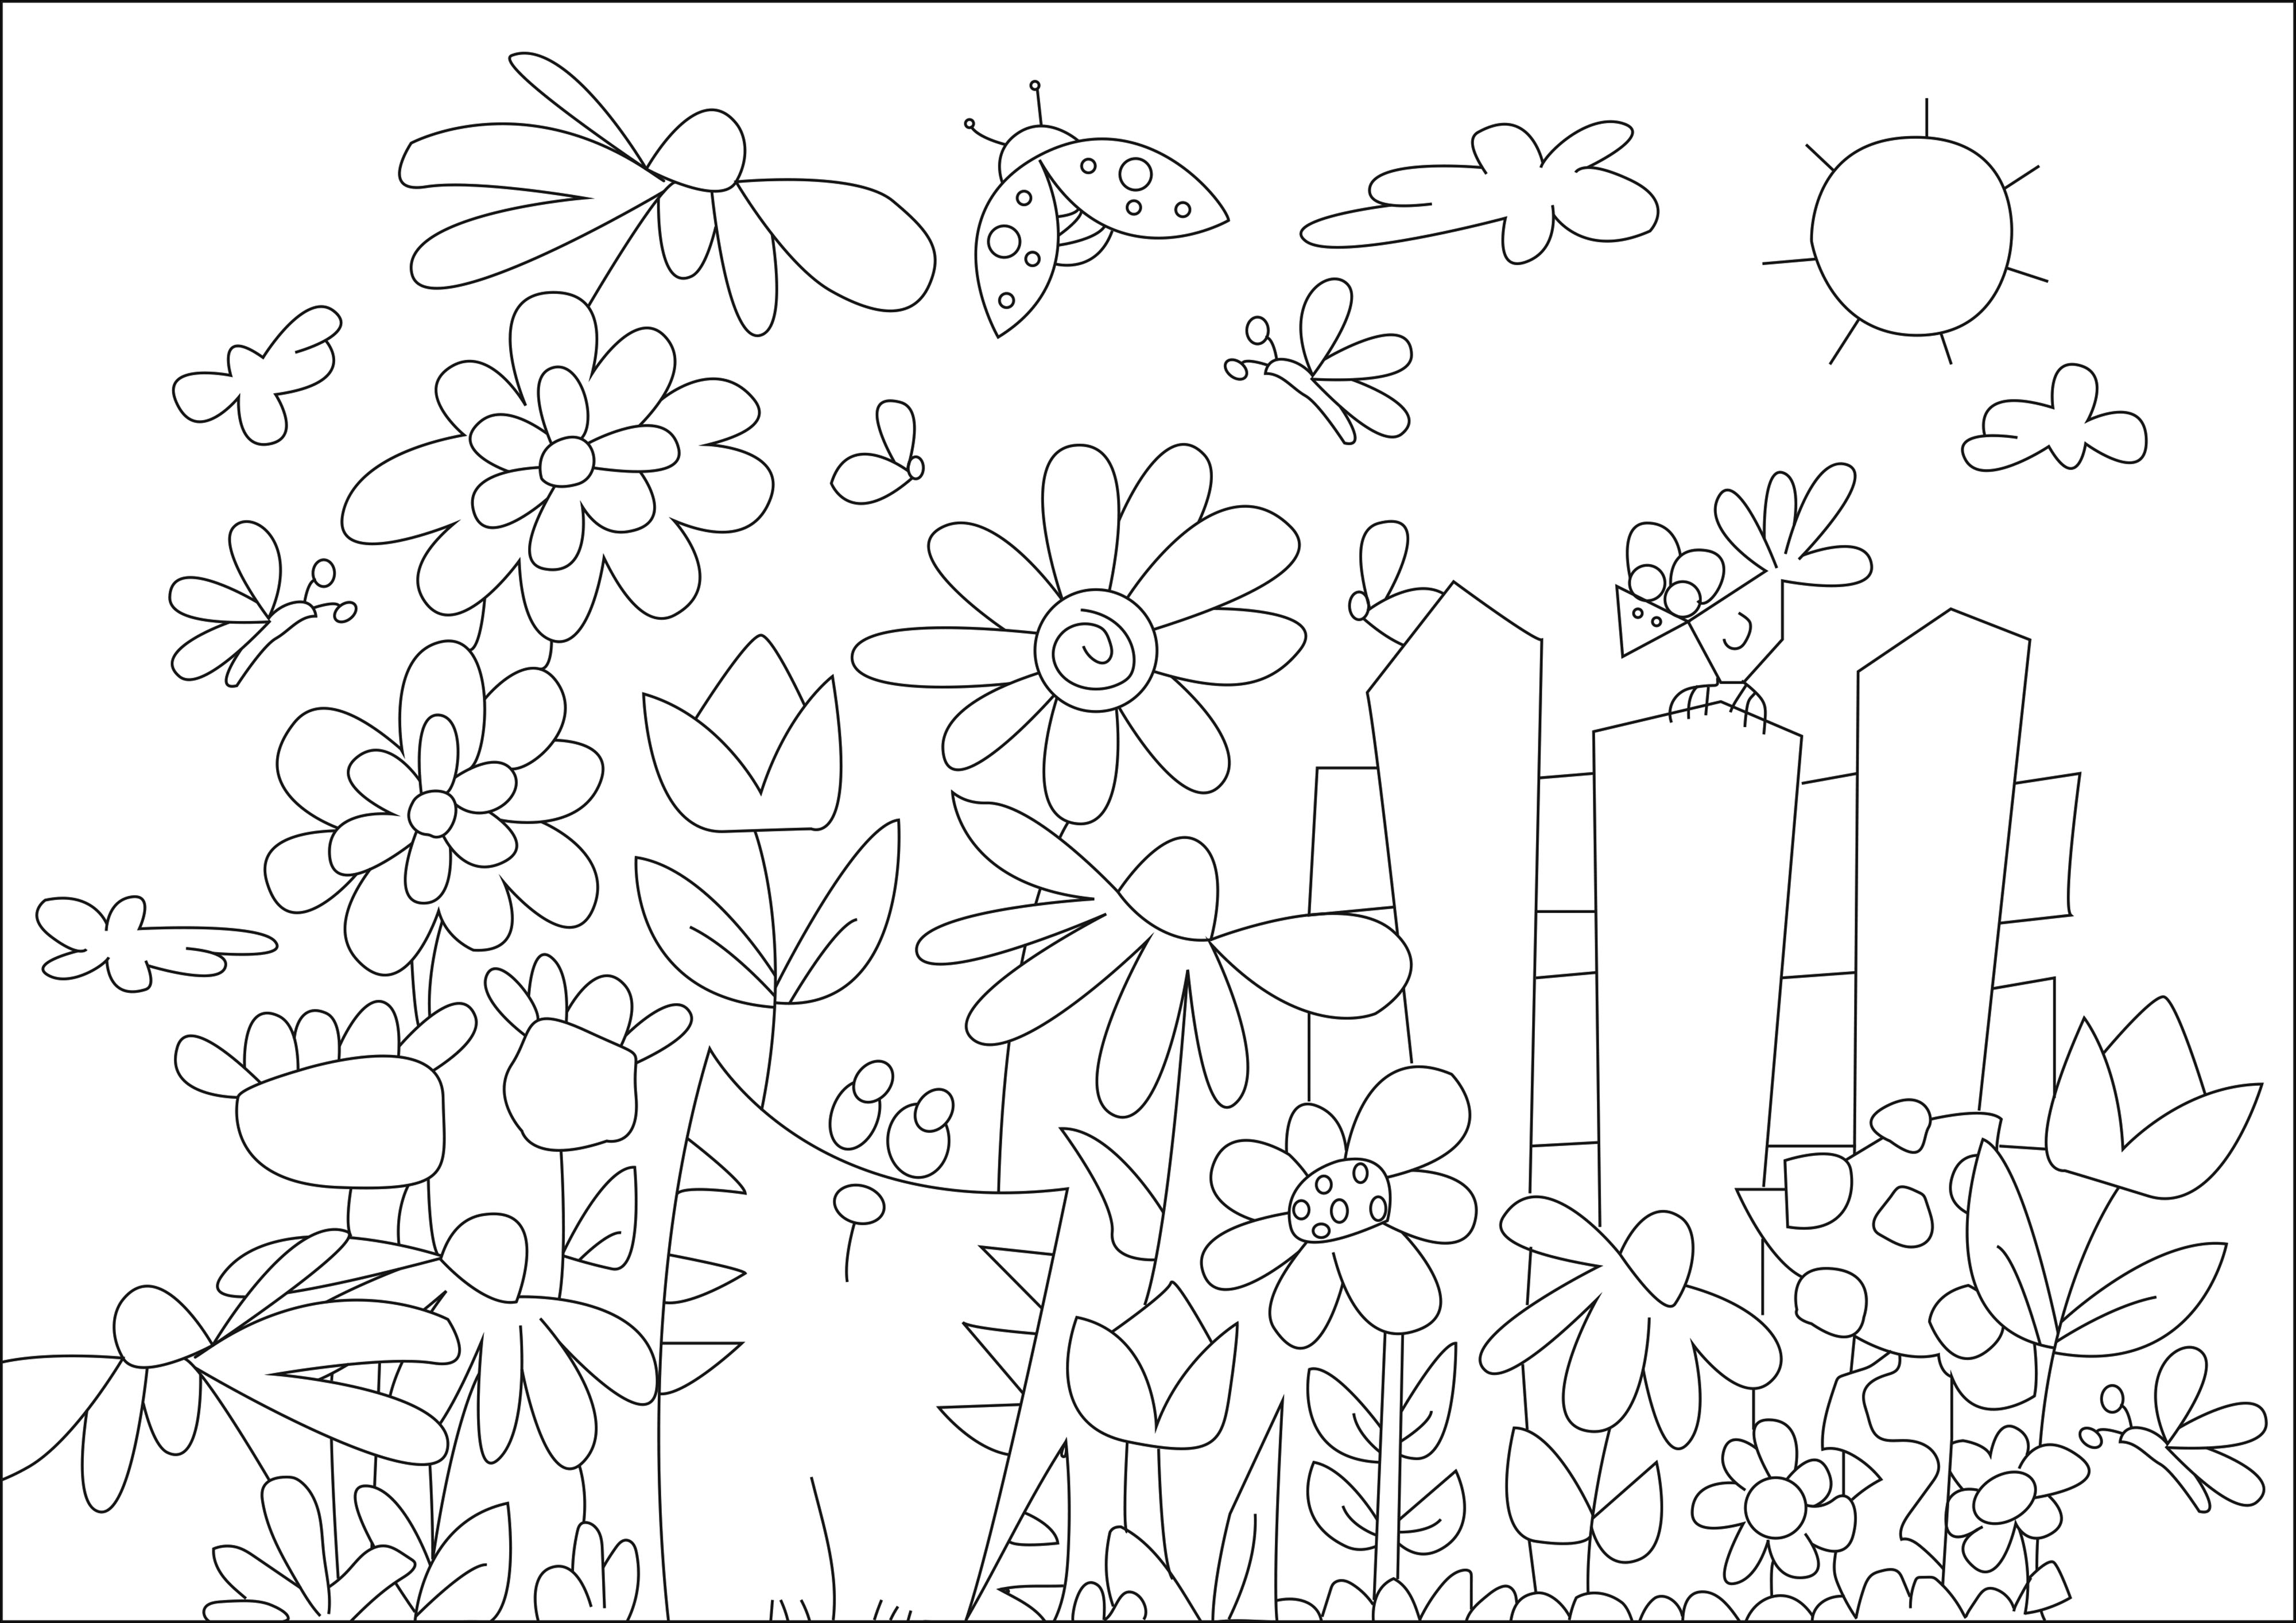 Jardim com bonitas borboletas, joaninhas e um gato a contemplar as flores, Artista : Caillou